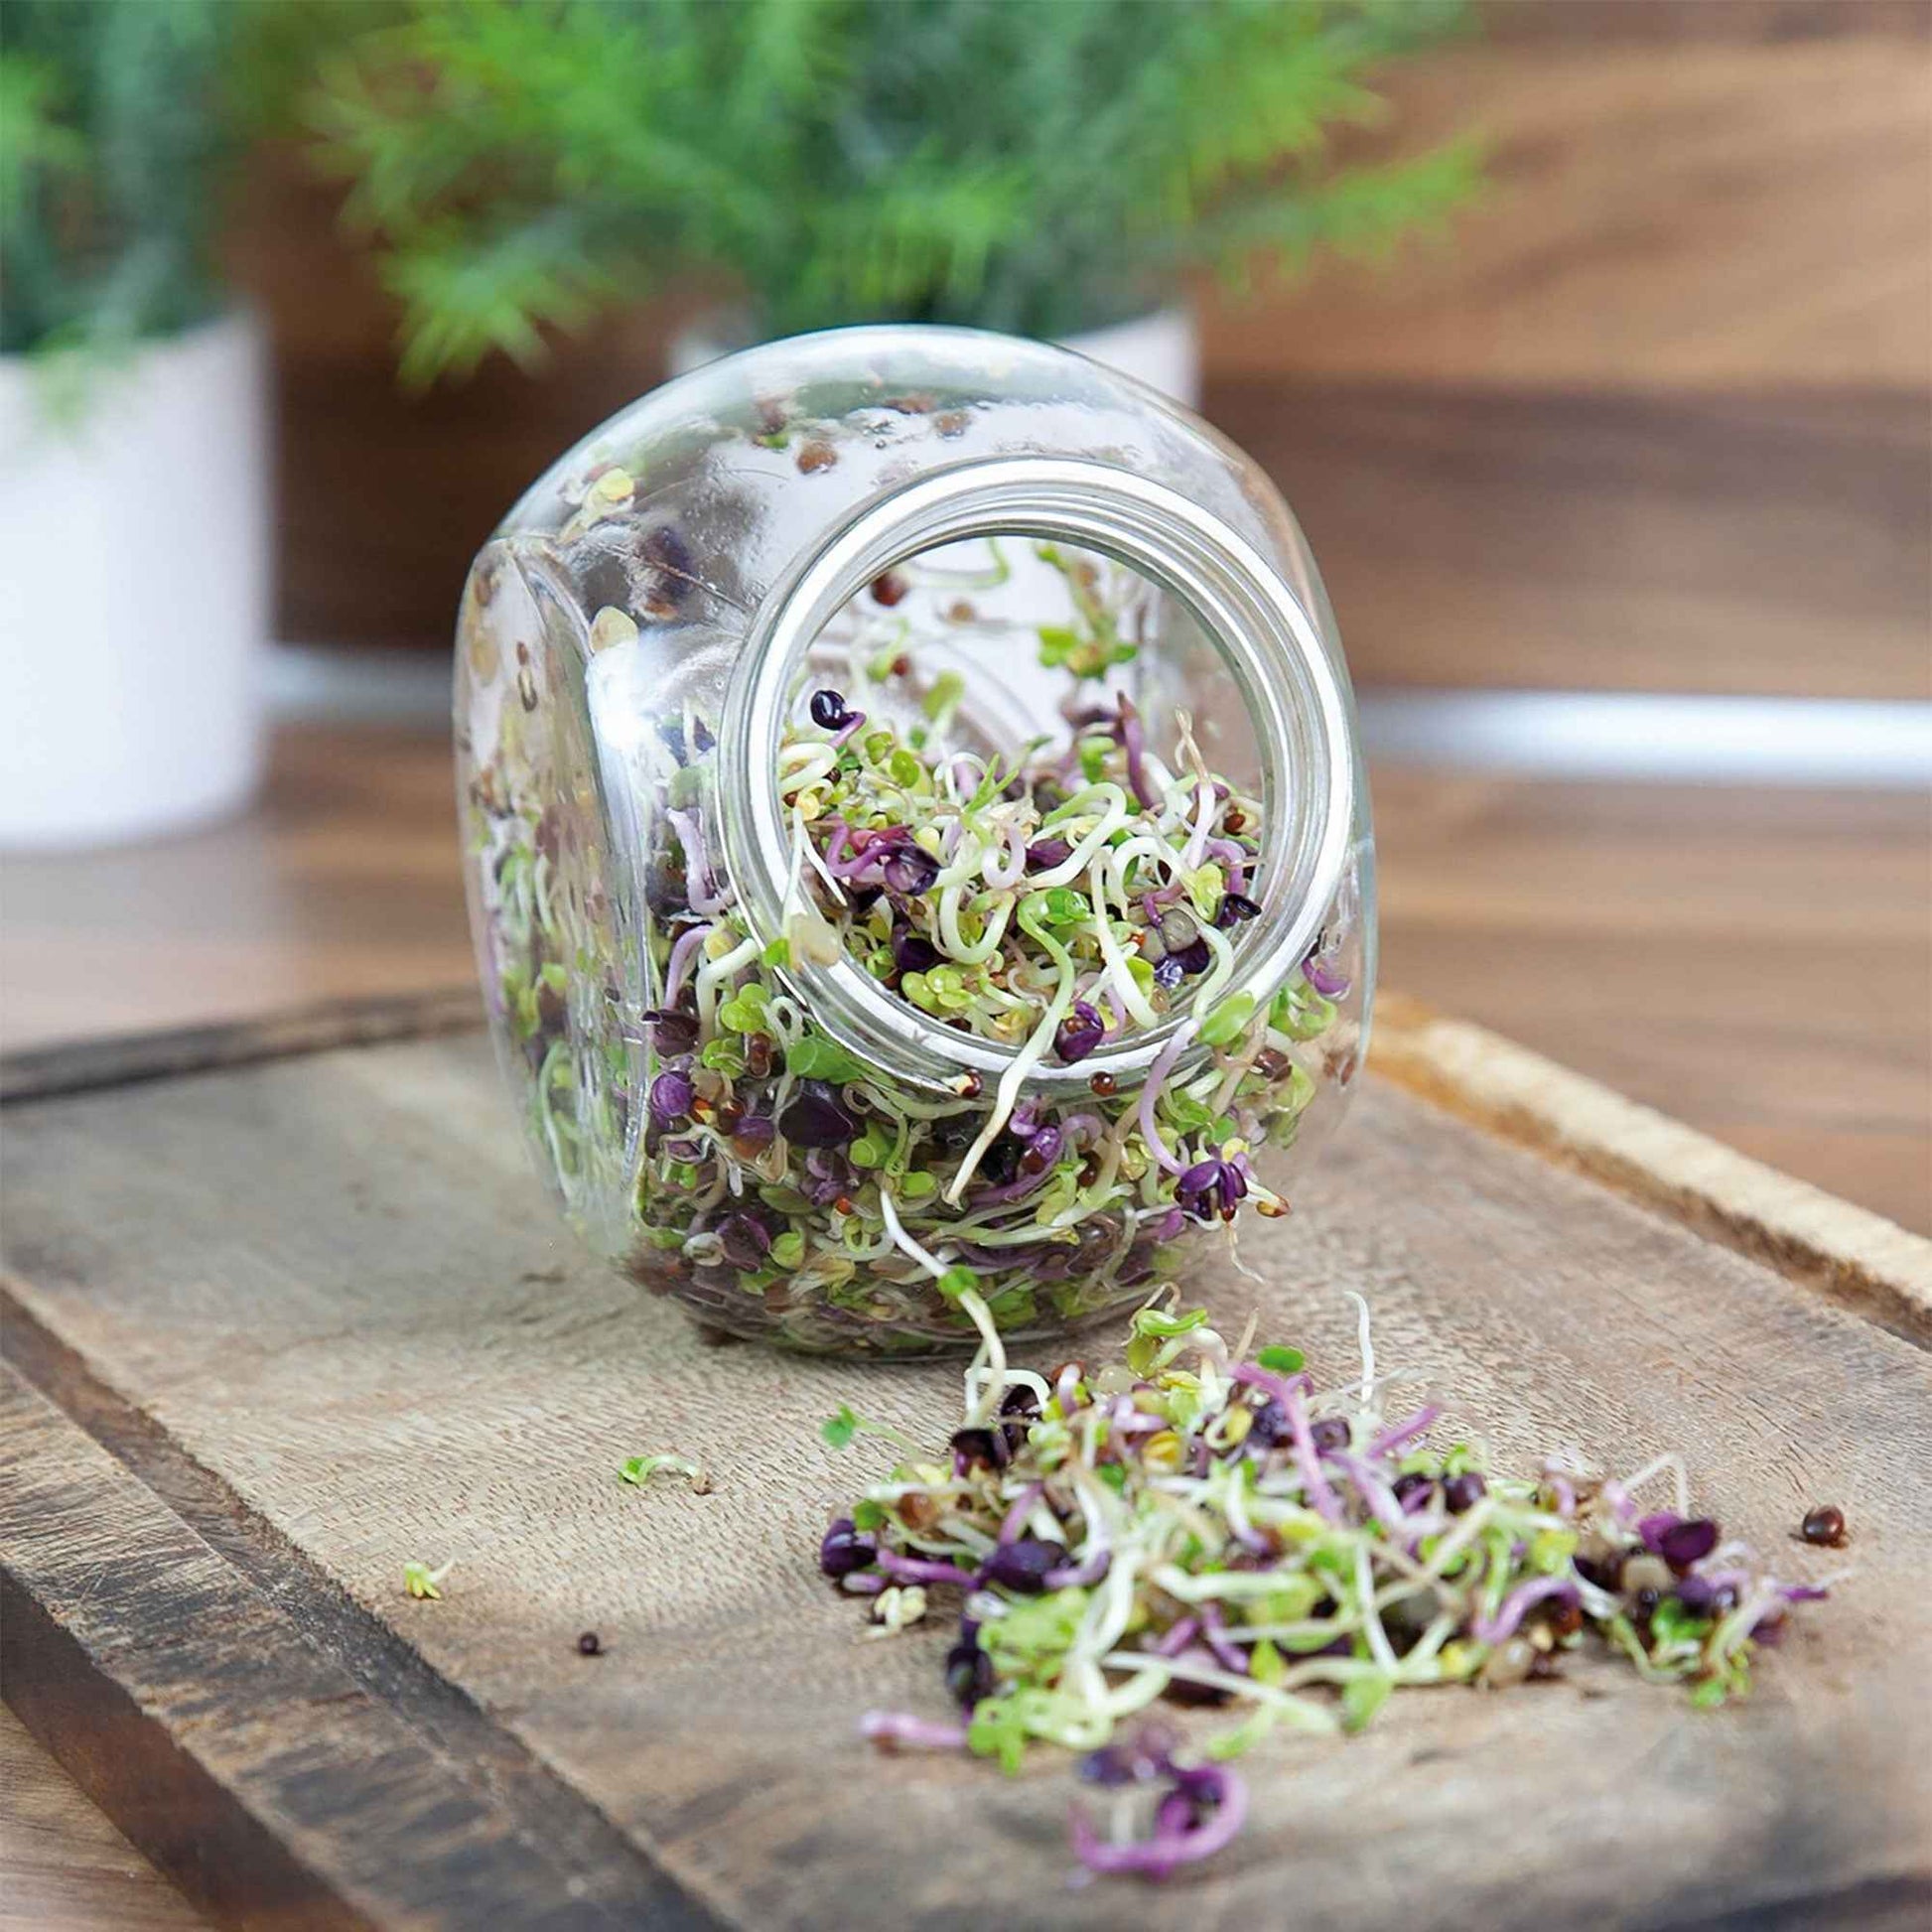 Graines à germer Mélange de salade épicé - Biologique incl. kit de culture - Semences de légumes - Idées cadeaux